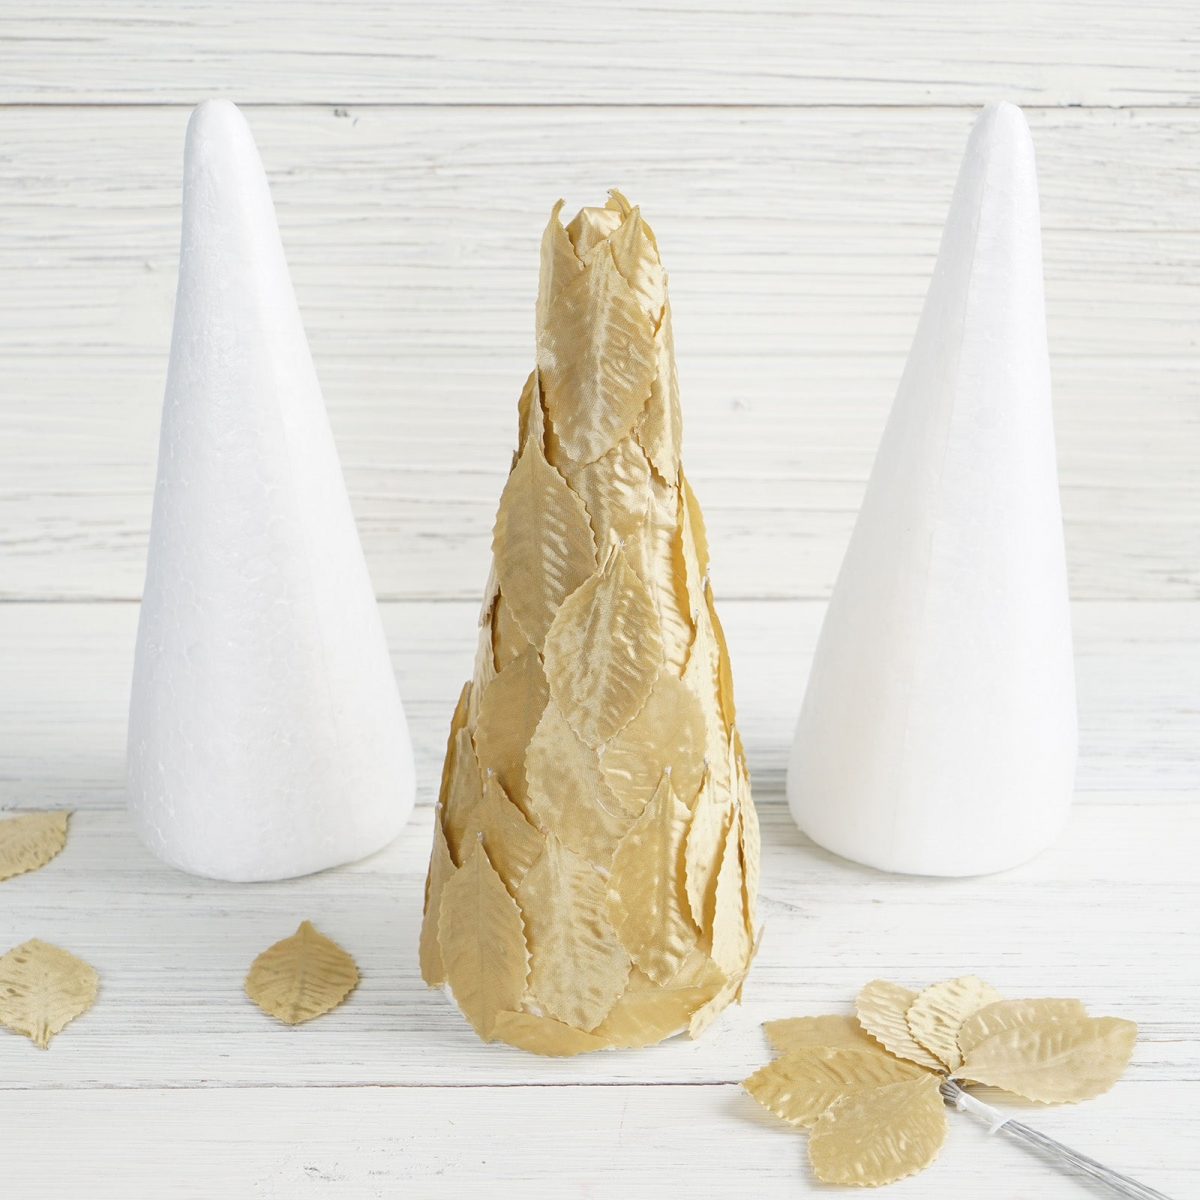 12 Pack | 8 White Styrofoam Cone, Foam Cone For DIY Crafts